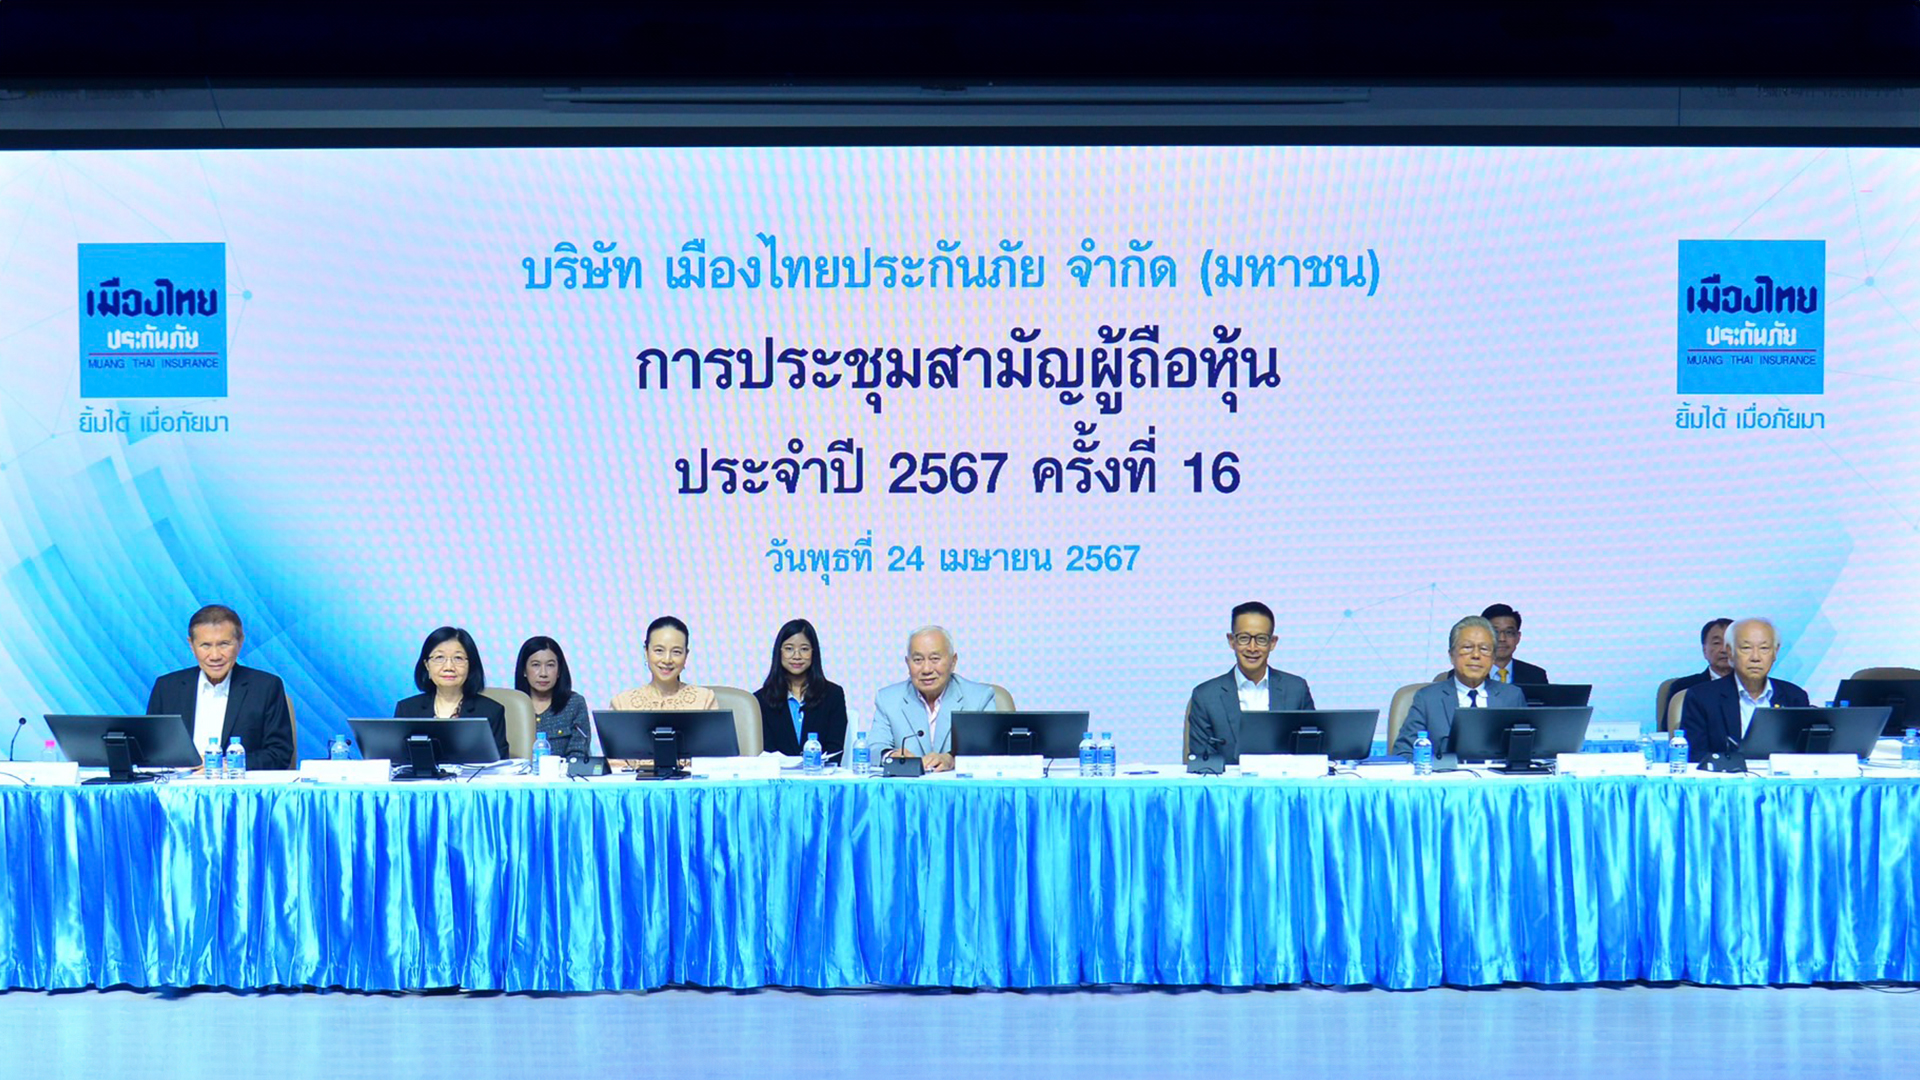 เมืองไทยประกันภัย จัดการประชุมสามัญผู้ถือหุ้น ประจำปี 2567